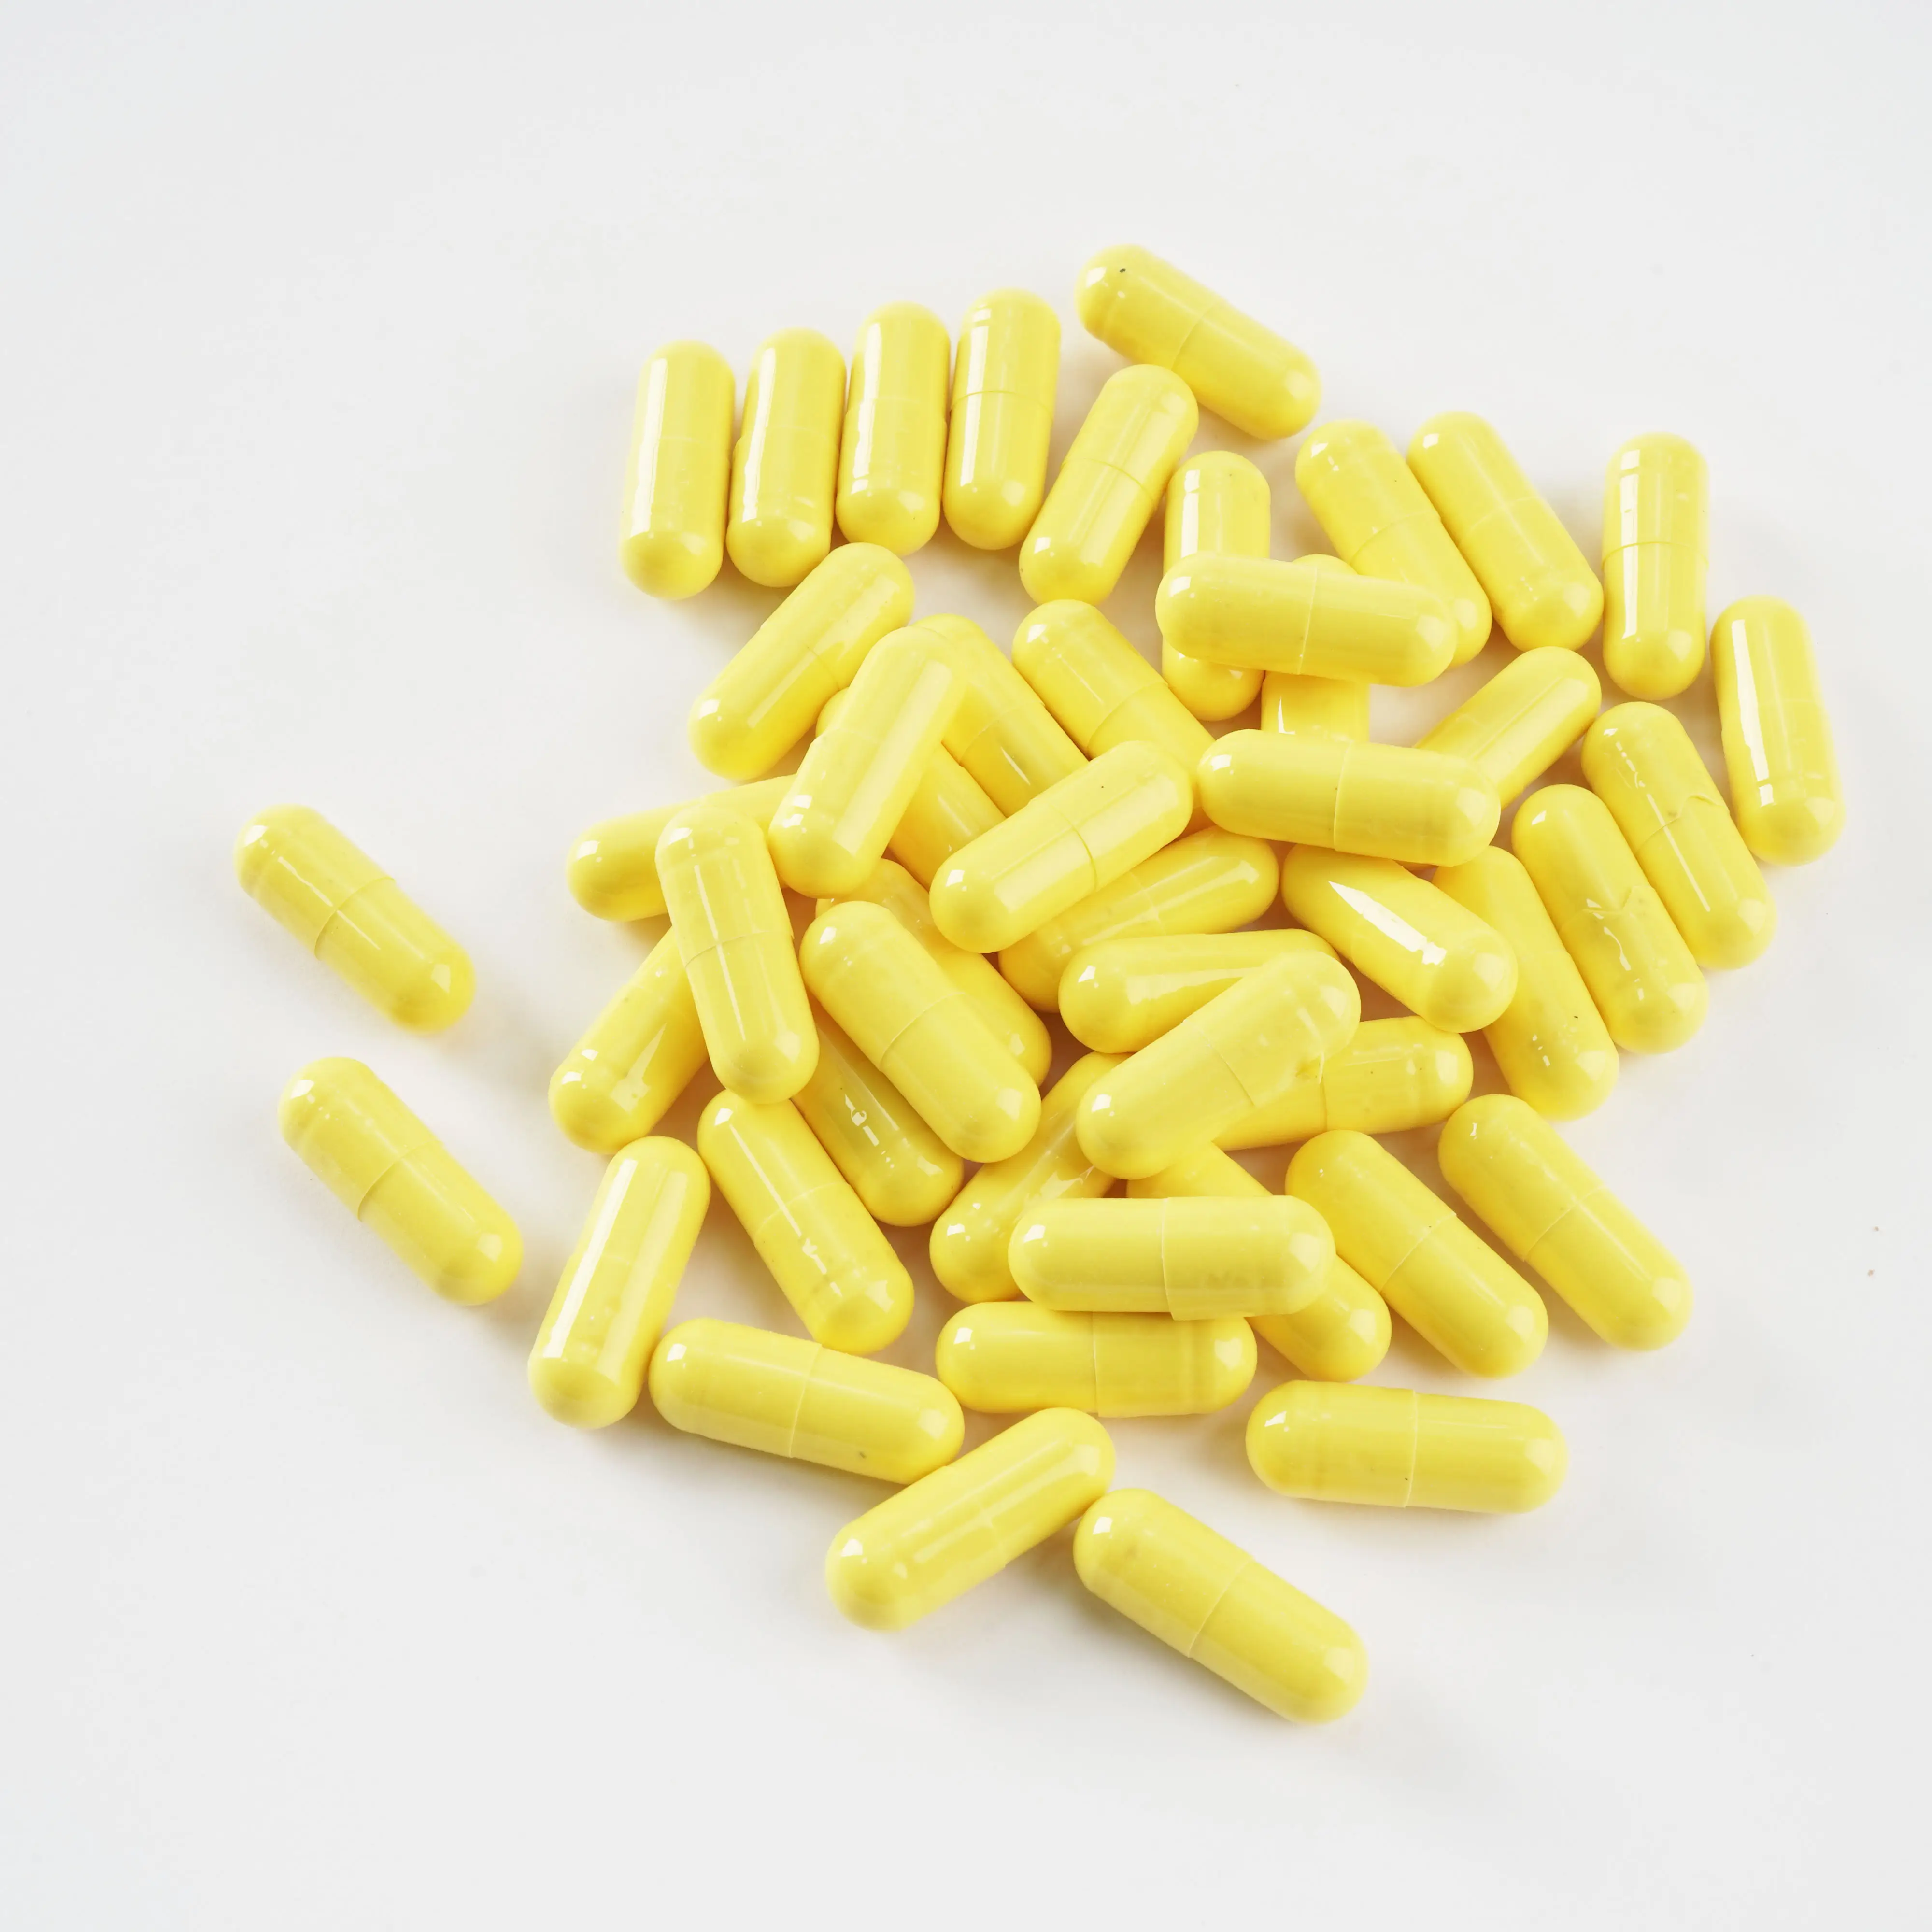 Zhongshun OEM bán số lượng lớn chất lượng cao Probiotic phức tạp viên nang cho sức khỏe đường ruột